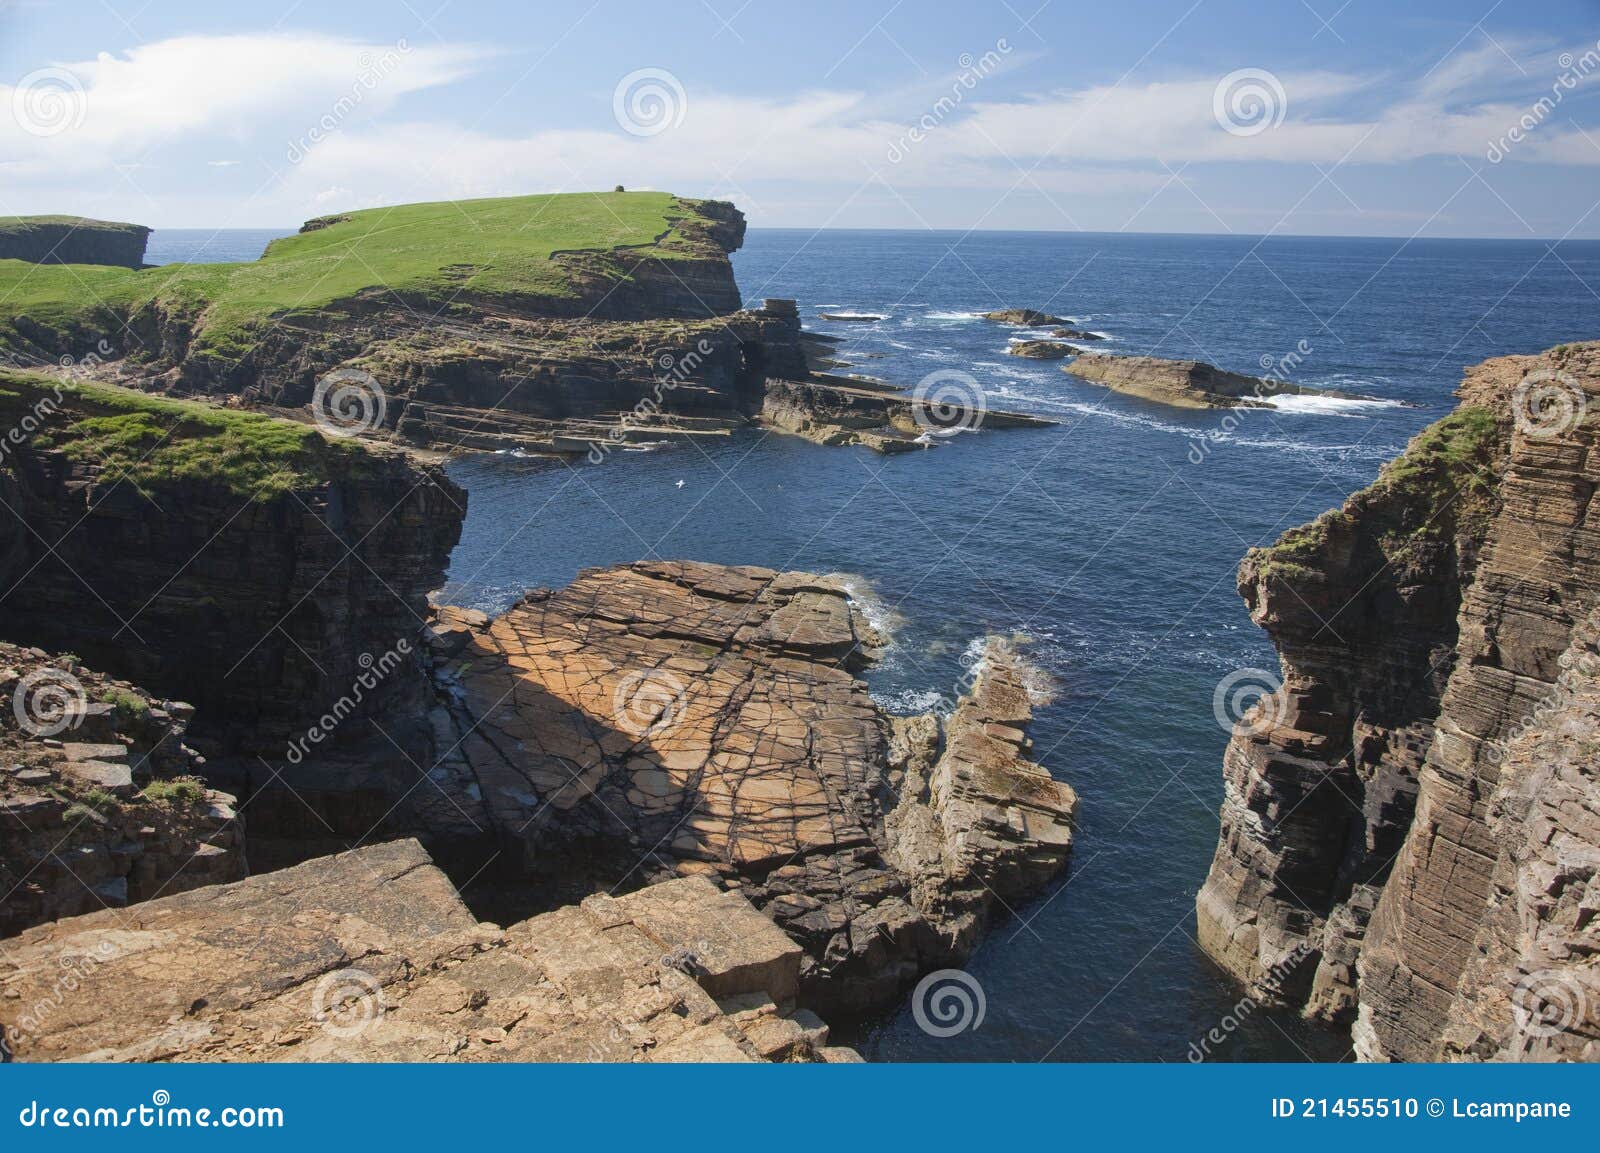 cliffs near marwick head,orkney islands